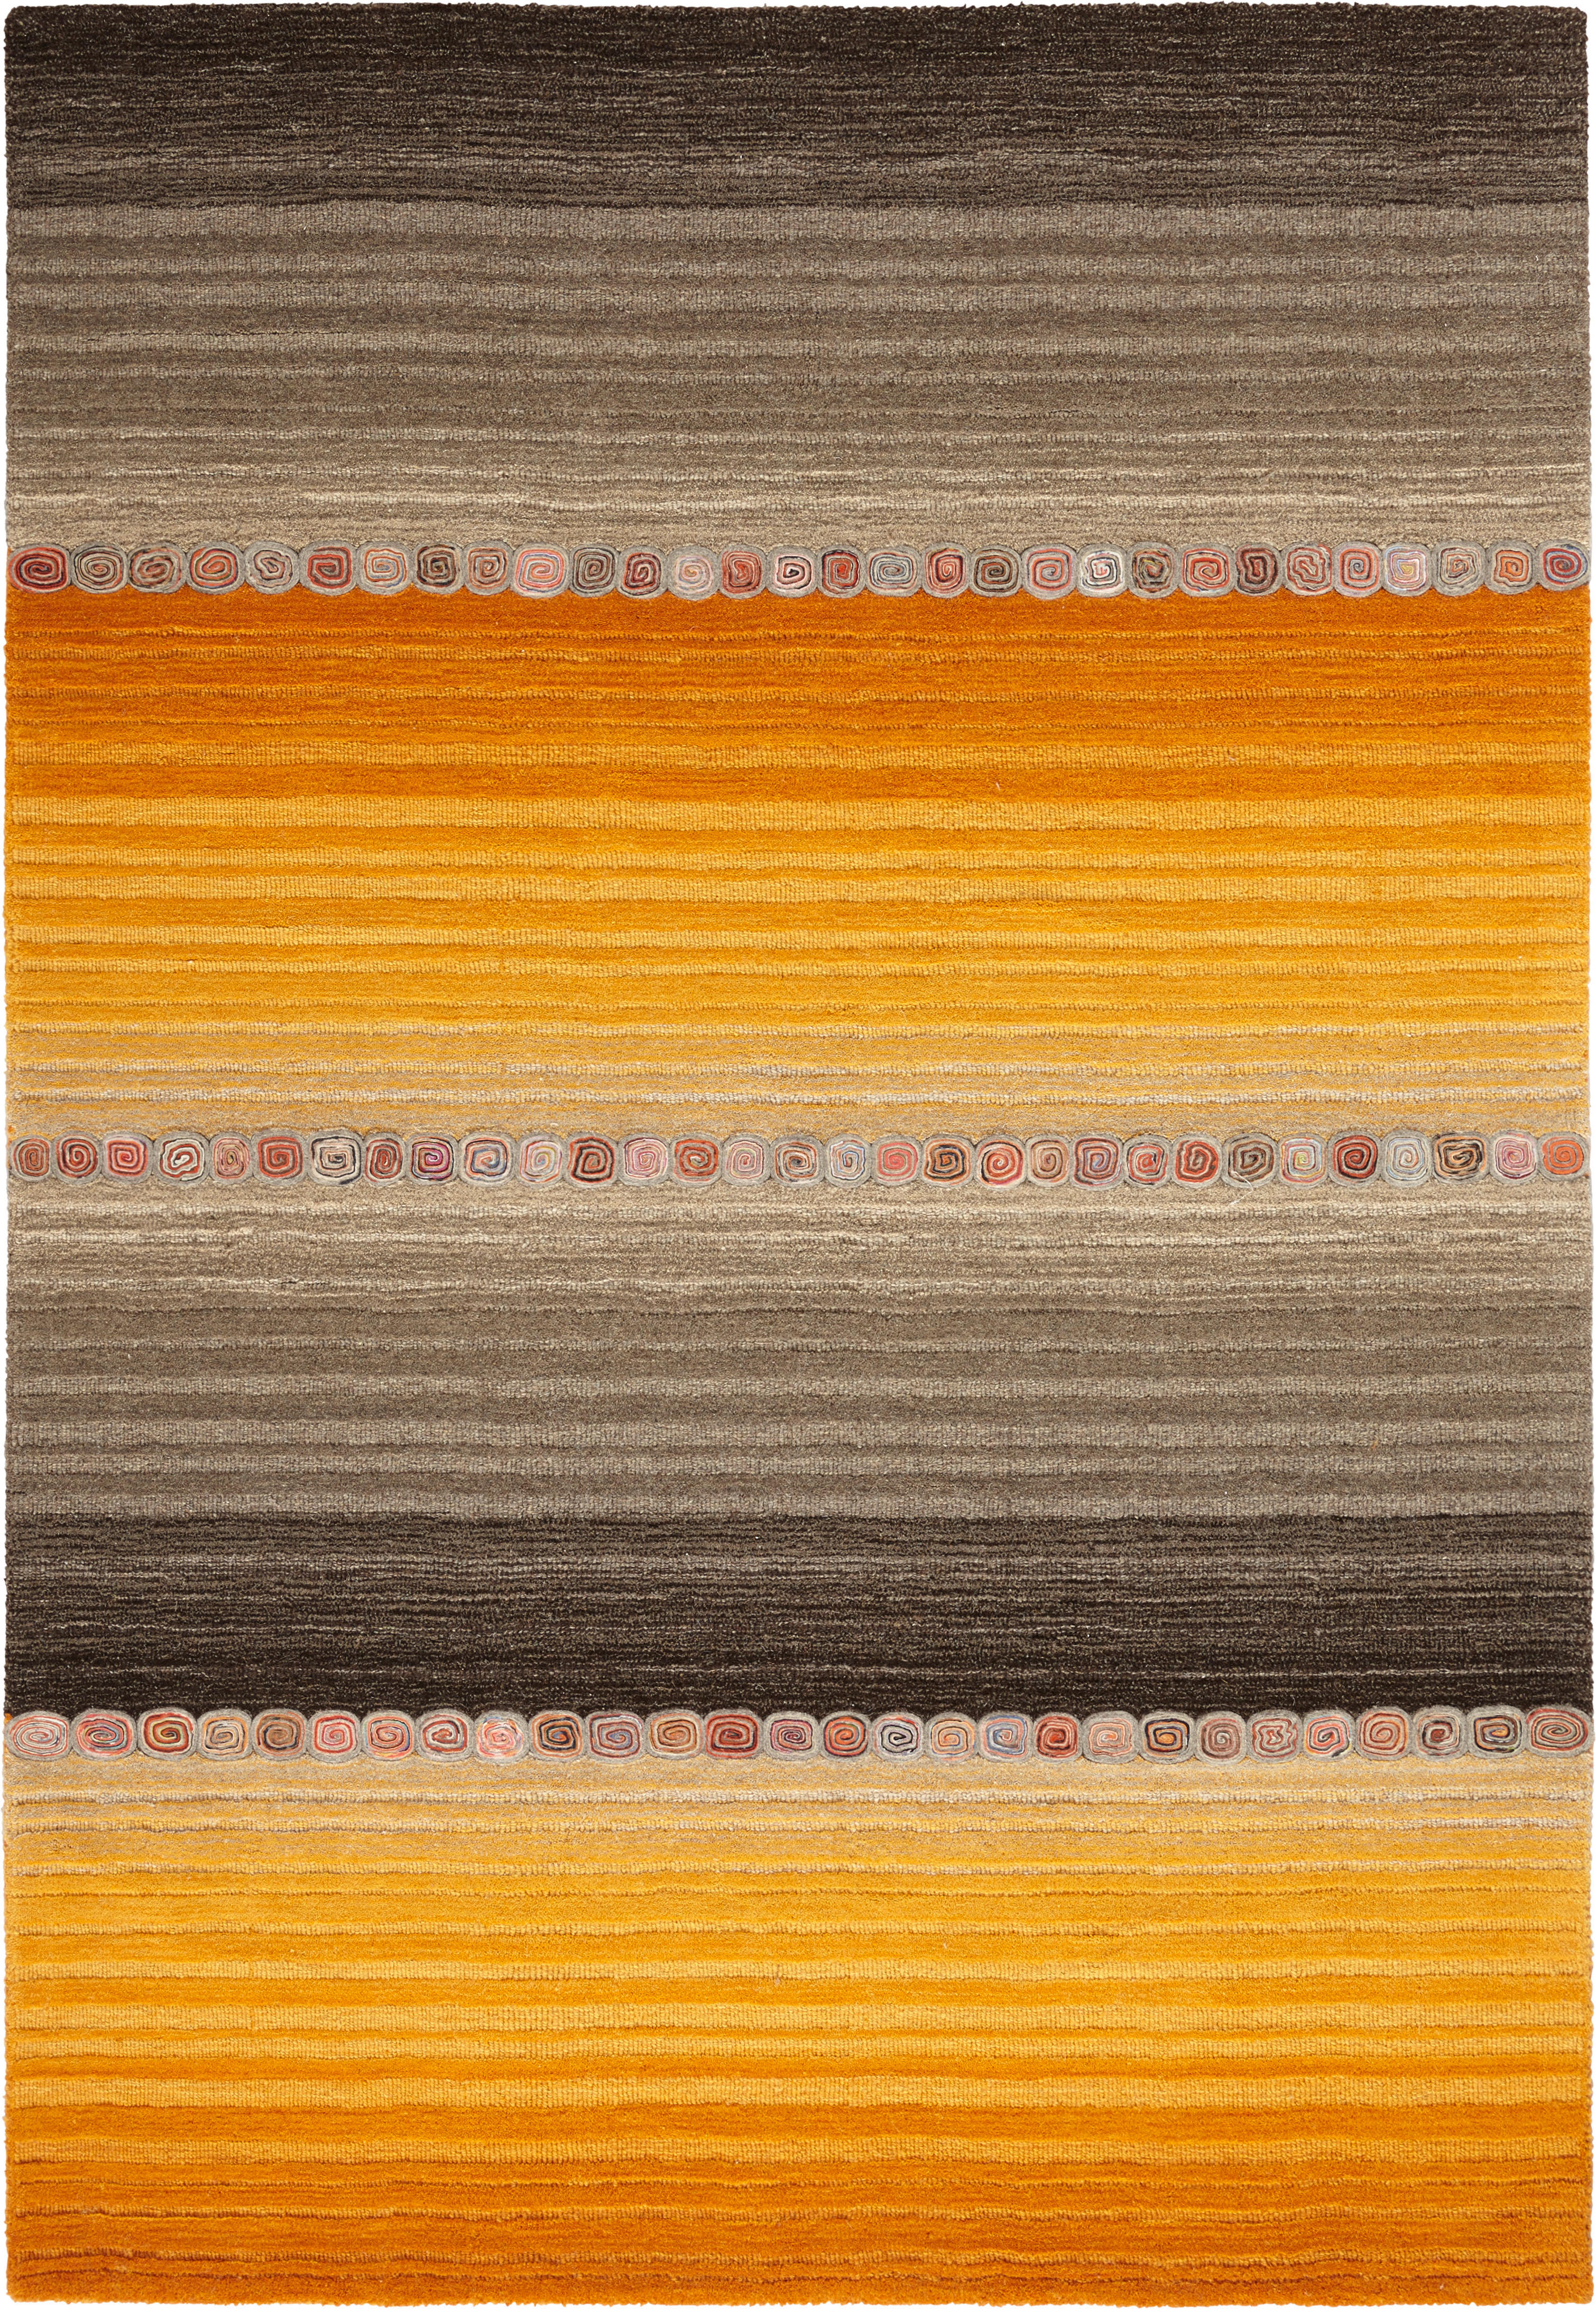 Cazaris ORIENTÁLNÍ KOBEREC, 160/230 cm, hnědá, oranžová - hnědá, oranžová